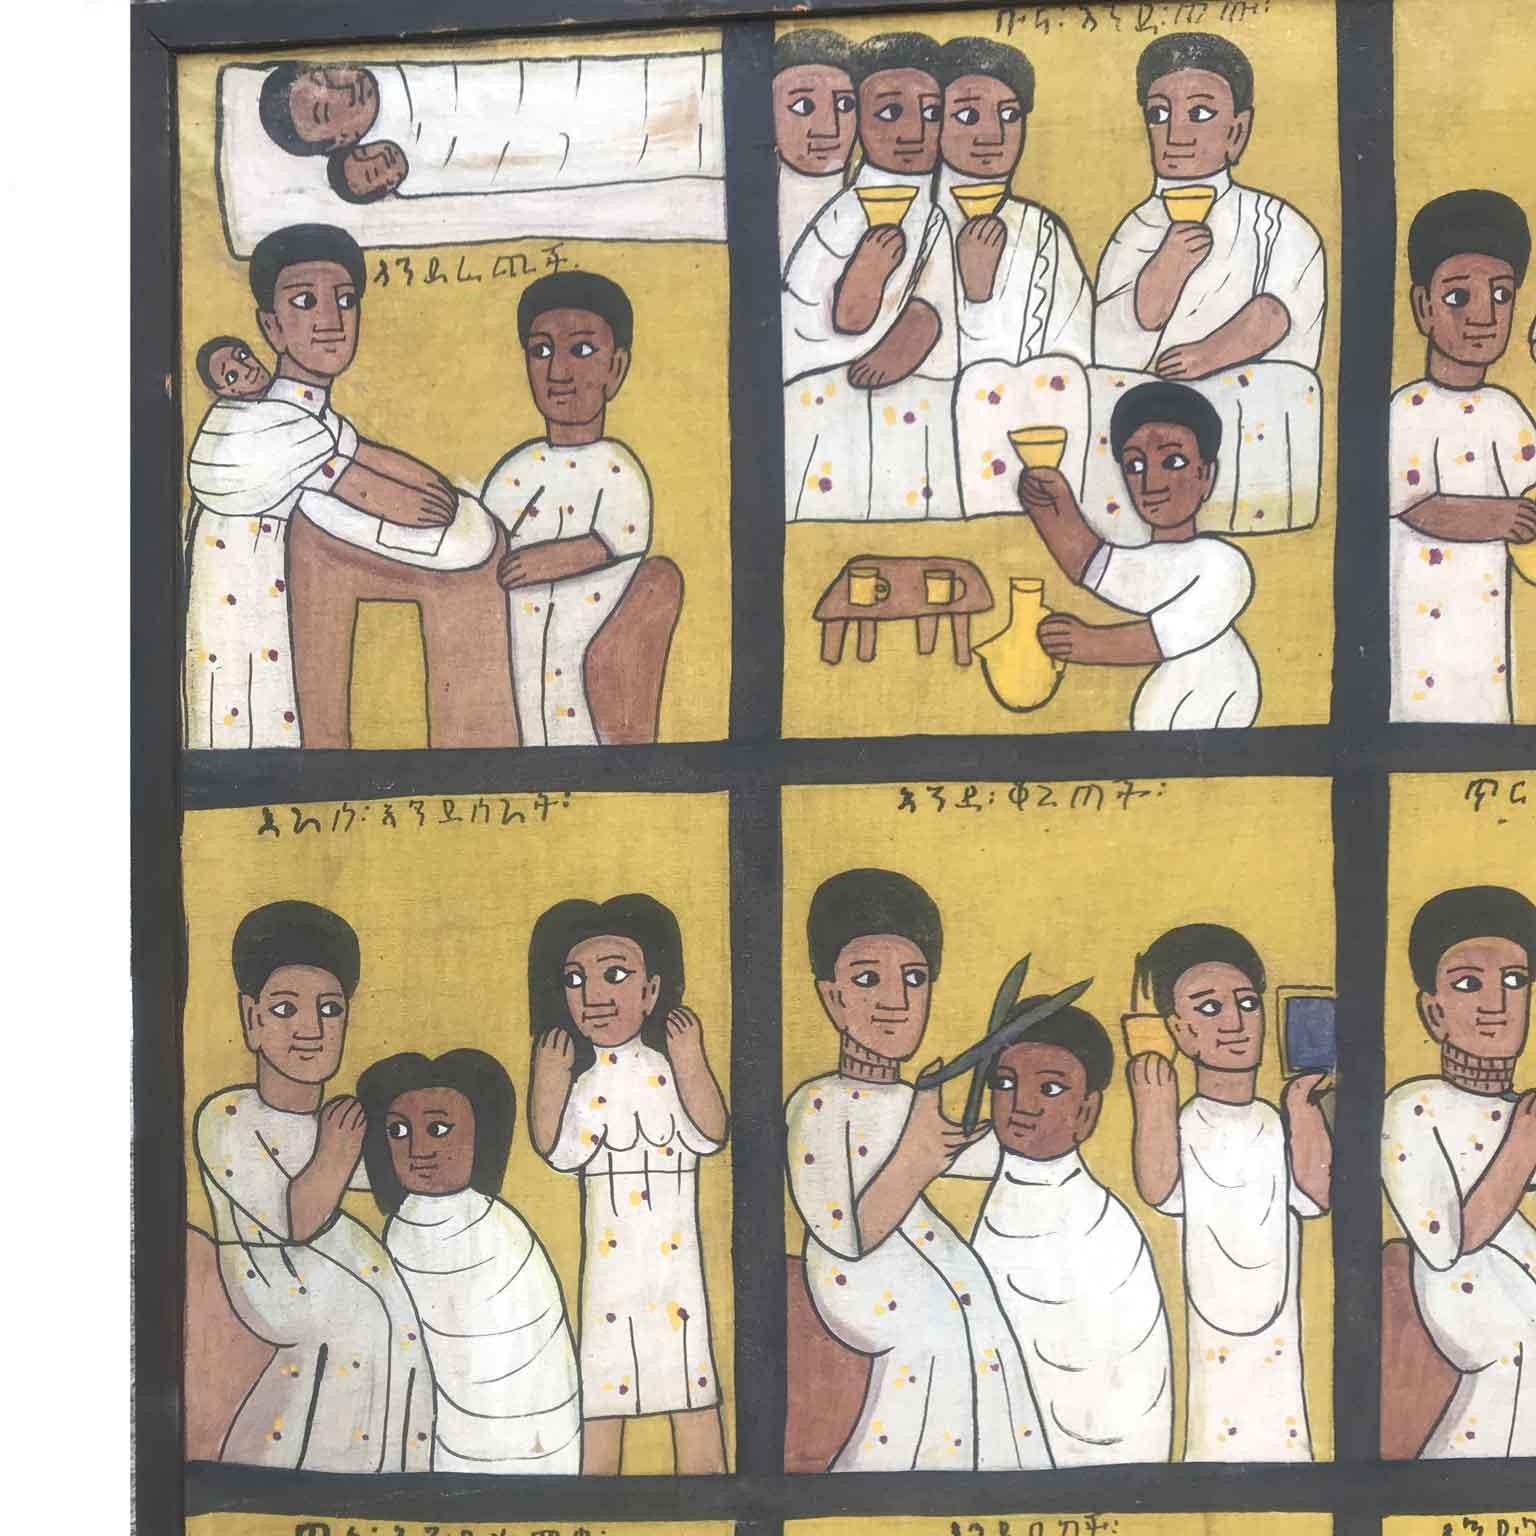 Antico dipinto etiope importato in Italia da un diplomatico durante l'occupazione italiana dell'Etiopia, alla fine degli anni Trenta. Questo dipinto di scena di genere è suddiviso in diciotto riquadri delimitati da una cornice nera e divisi in tre